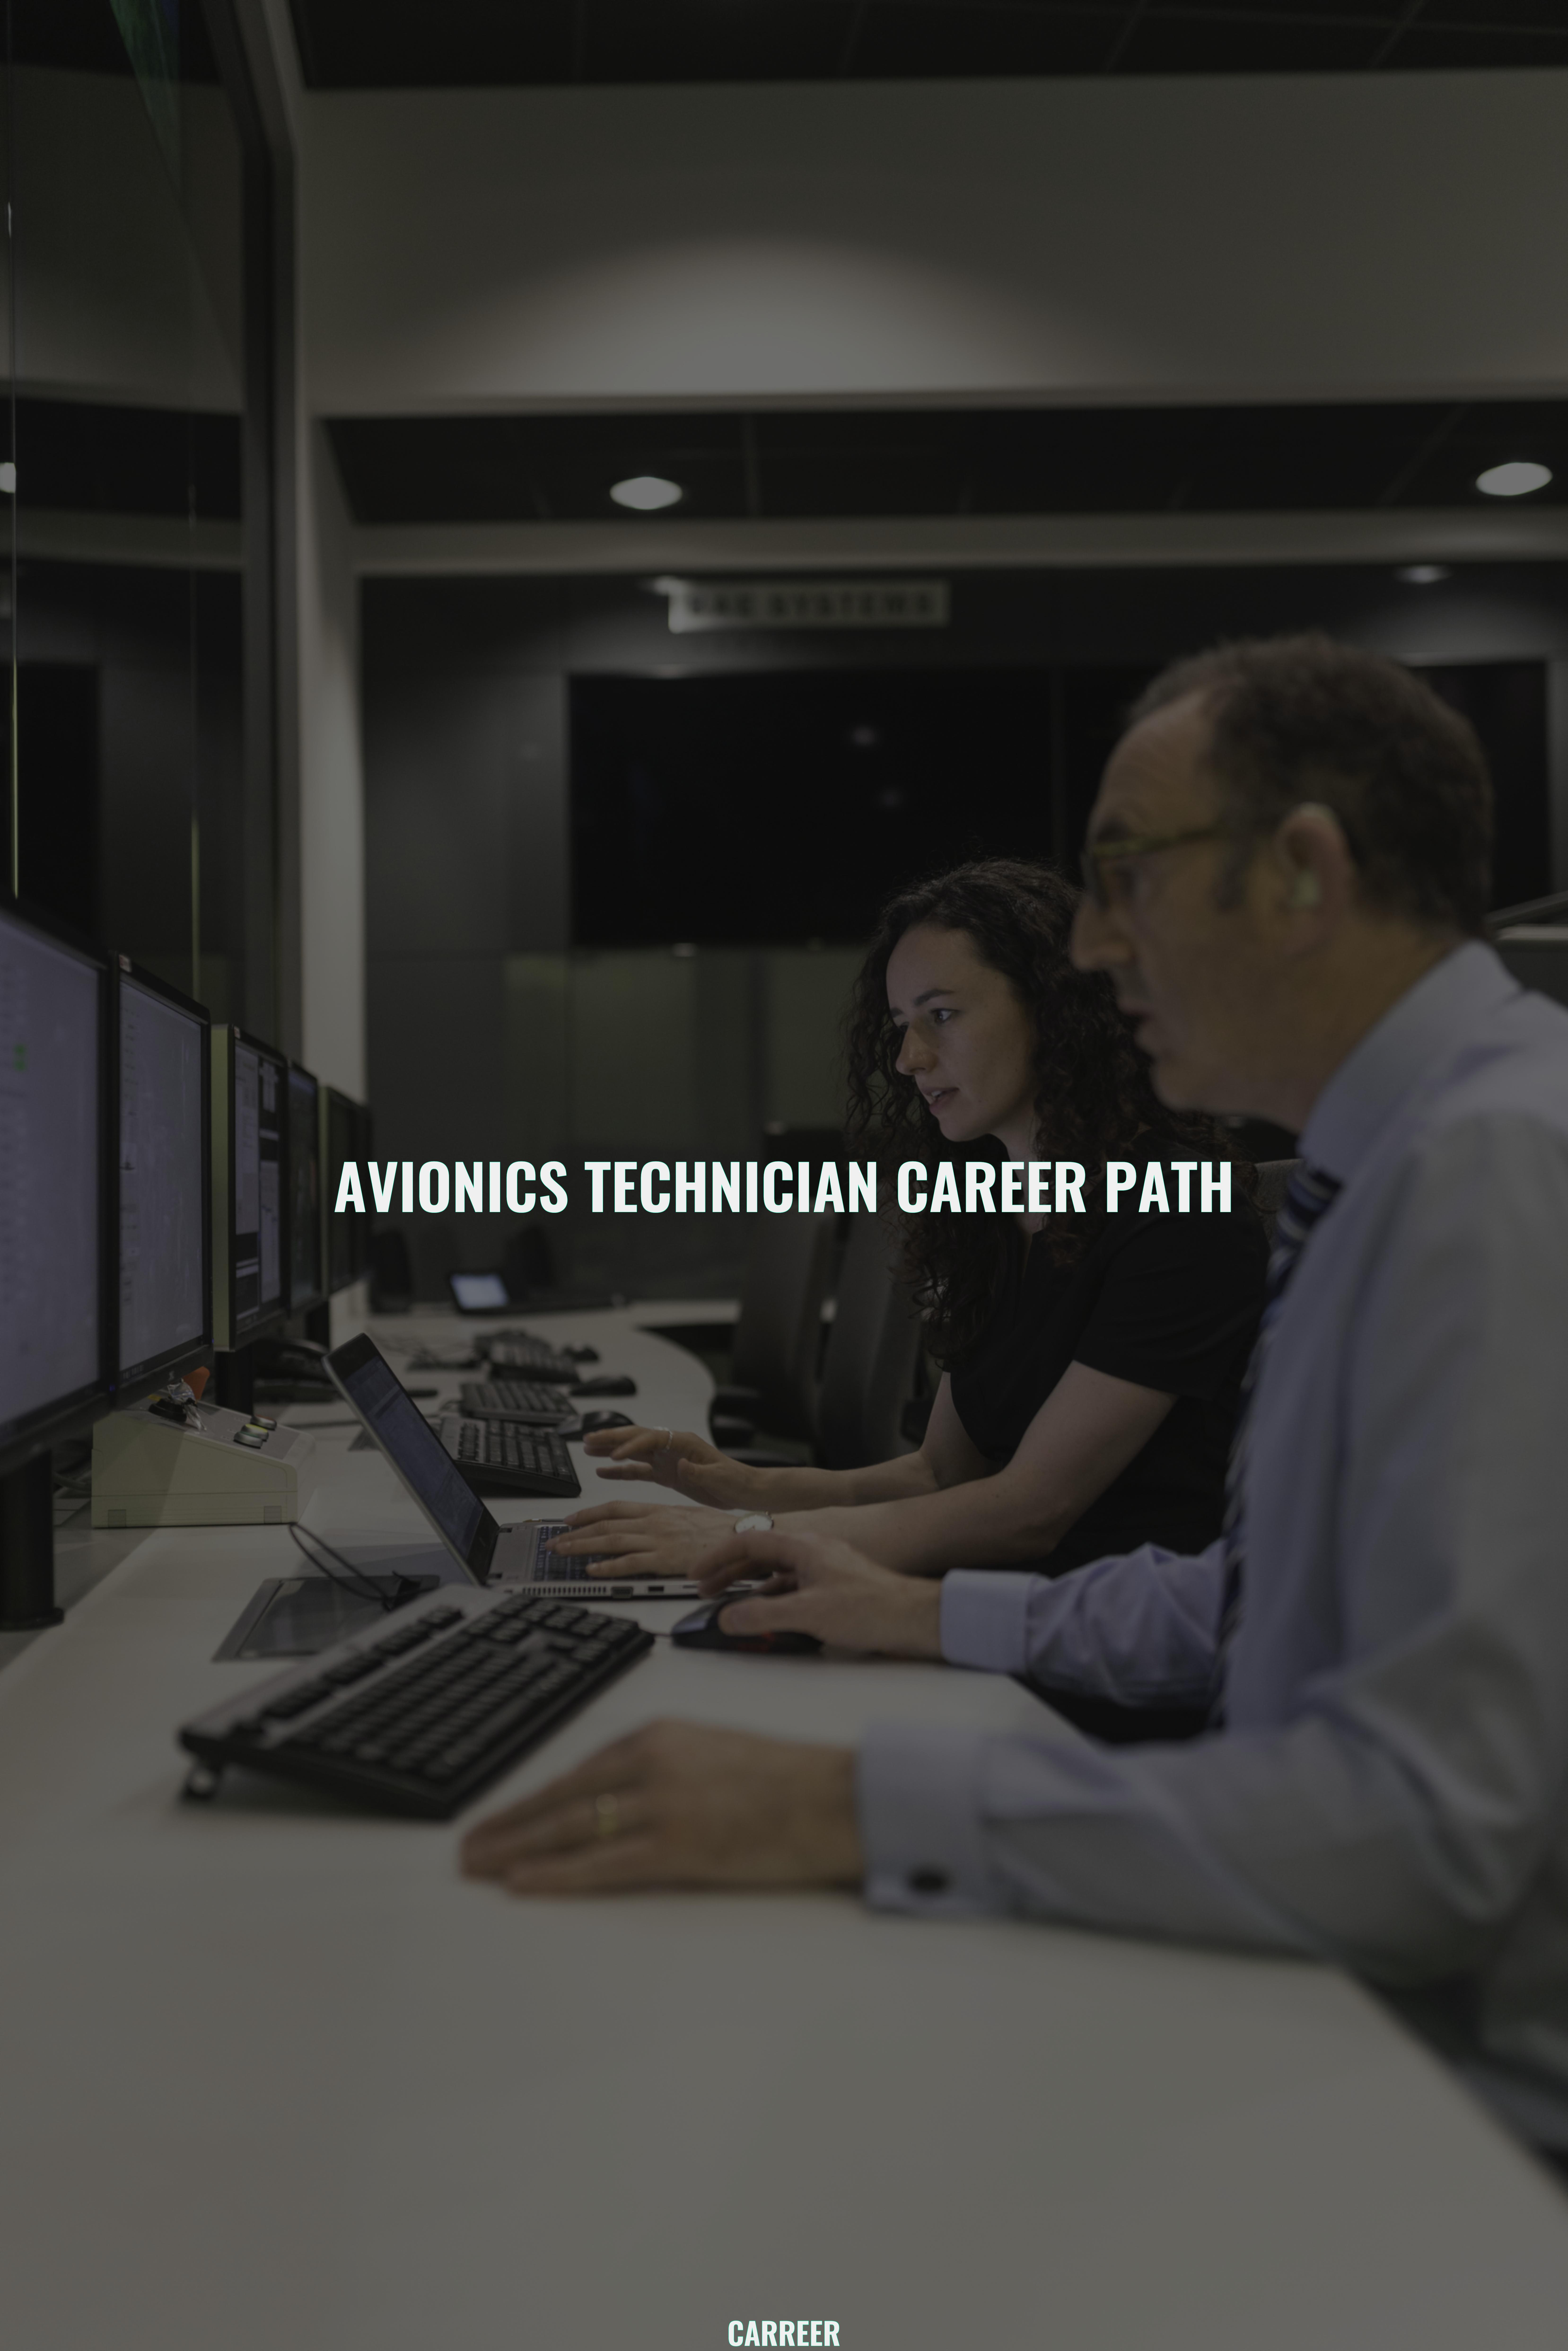 Avionics technician career path